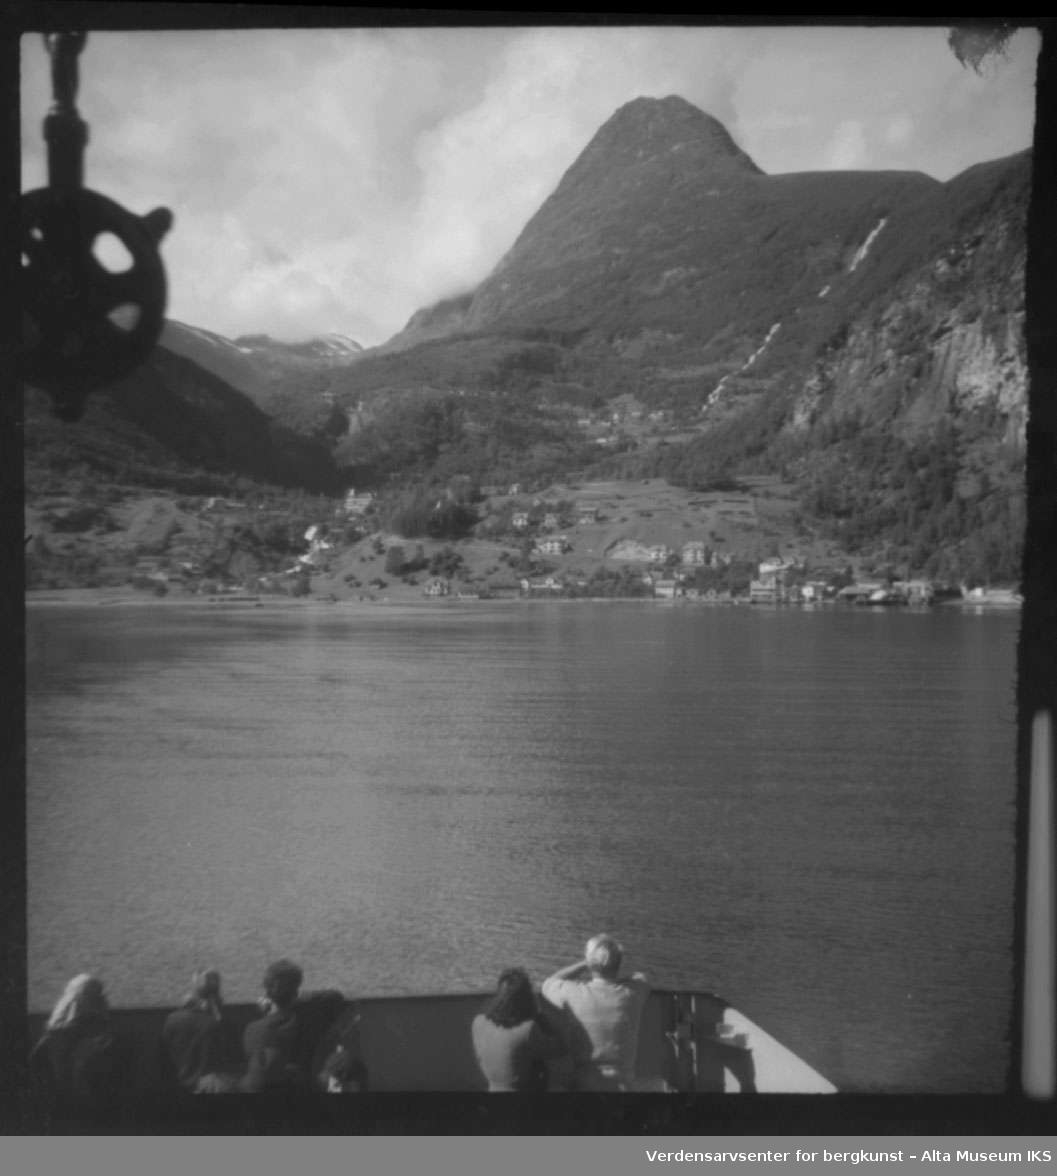 Utsikt over fjord fra båt, på land ser vi en bygd med flere hus/bygninger og høye fjell.